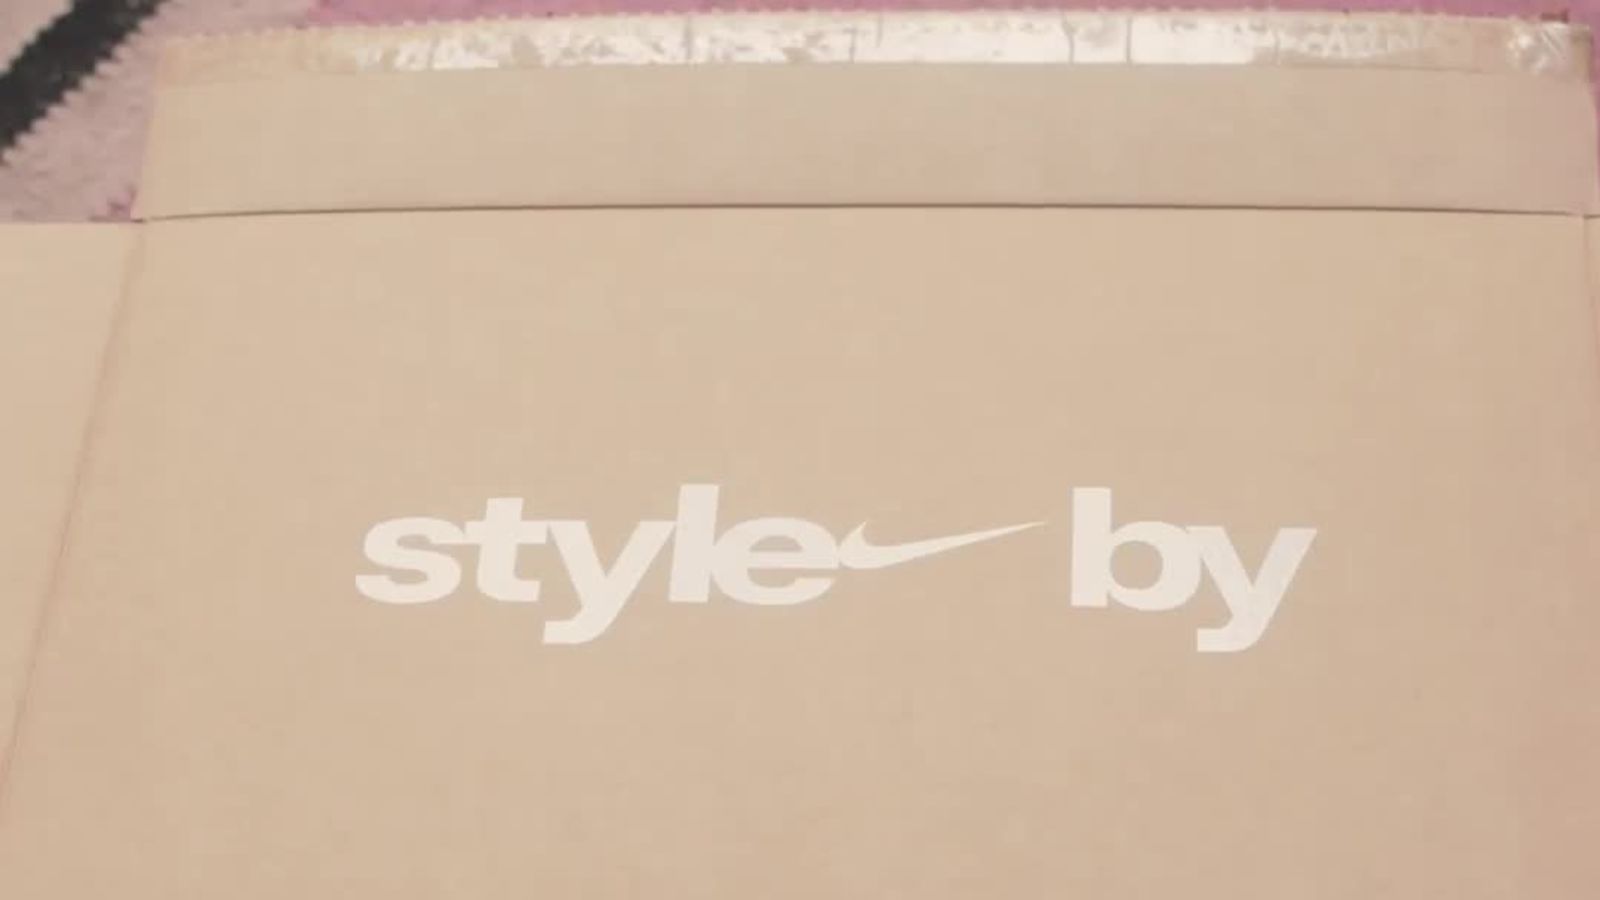 Estetica revival: tre modi per abbinare le Nike Cortez secondo Vogue